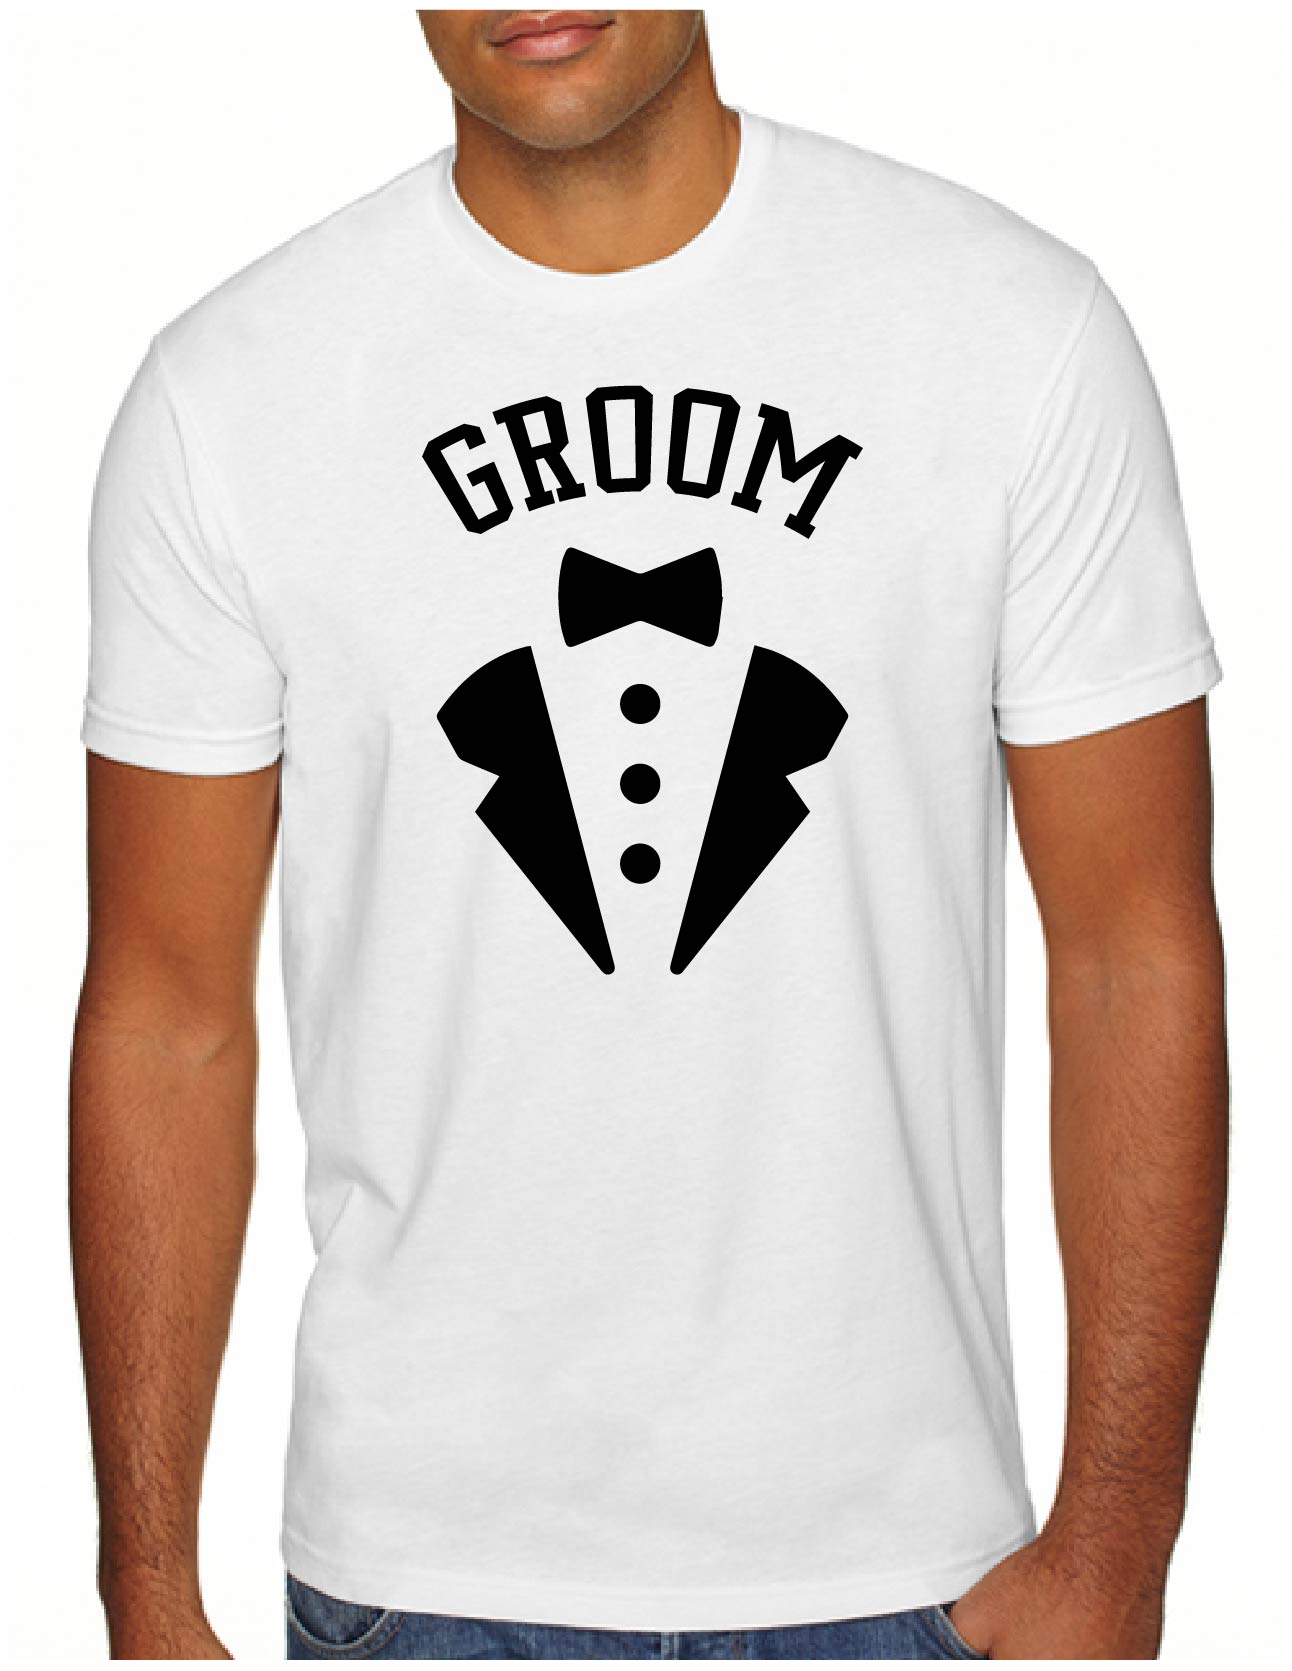 Groom Tux Style Men's Tee (149)